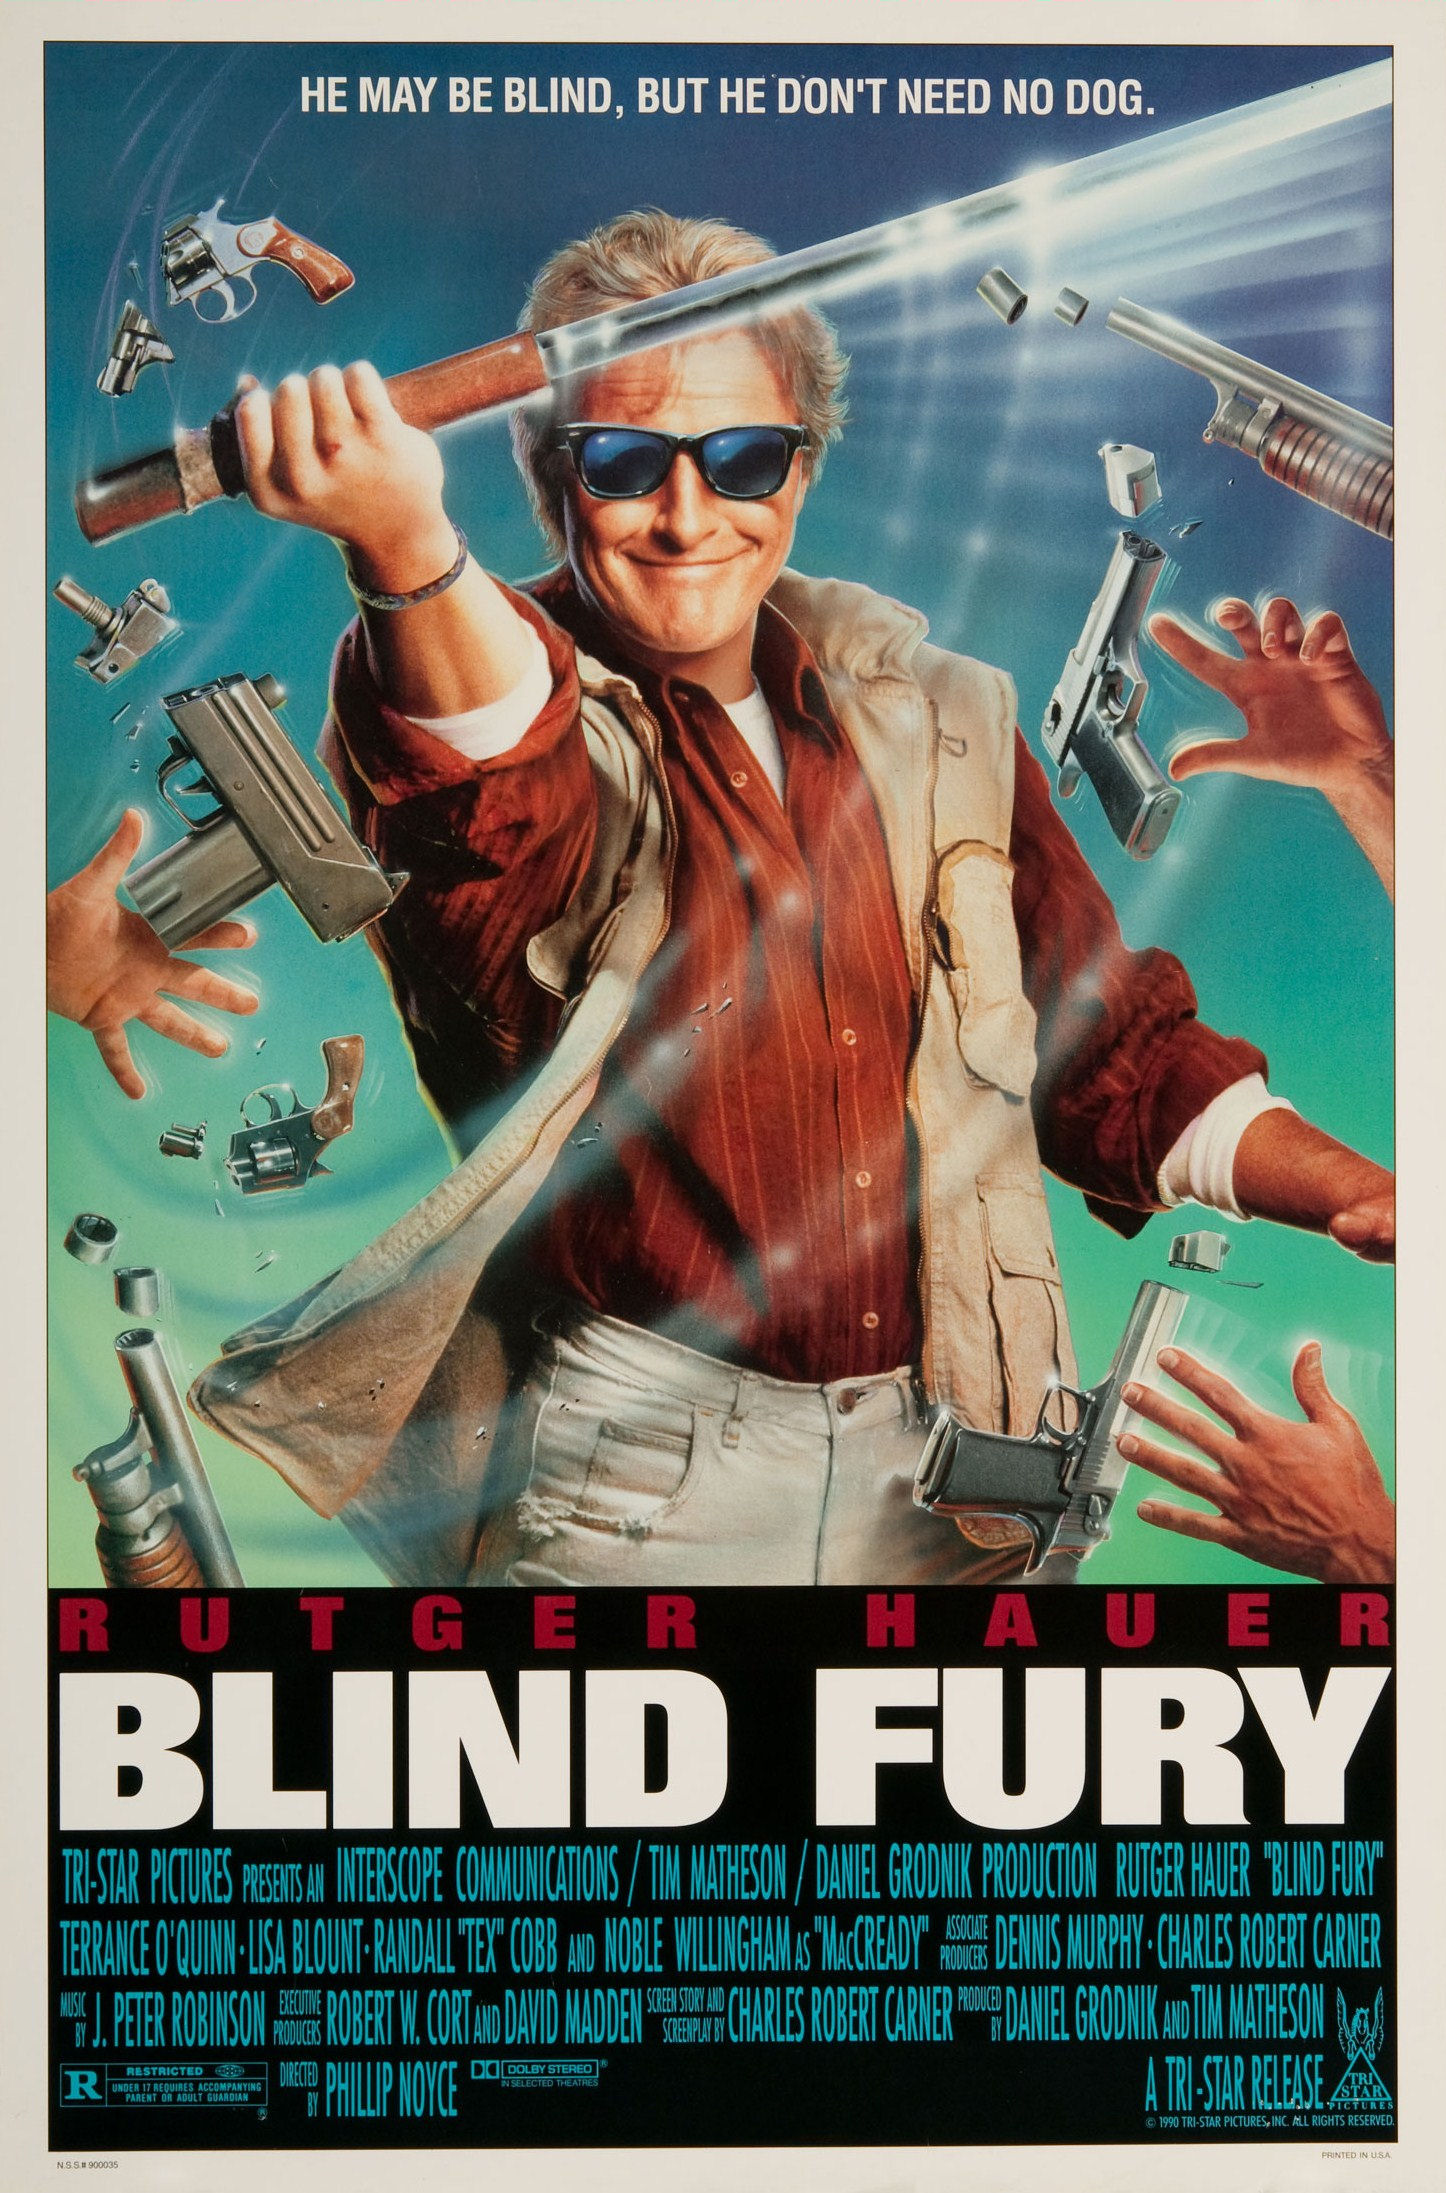 ดูหนังออนไลน์ฟรี BLIND FURY (1989) เพลิงบอดไม่เอาหมานำ หนังเต็มเรื่อง หนังมาสเตอร์ ดูหนังHD ดูหนังออนไลน์ ดูหนังใหม่